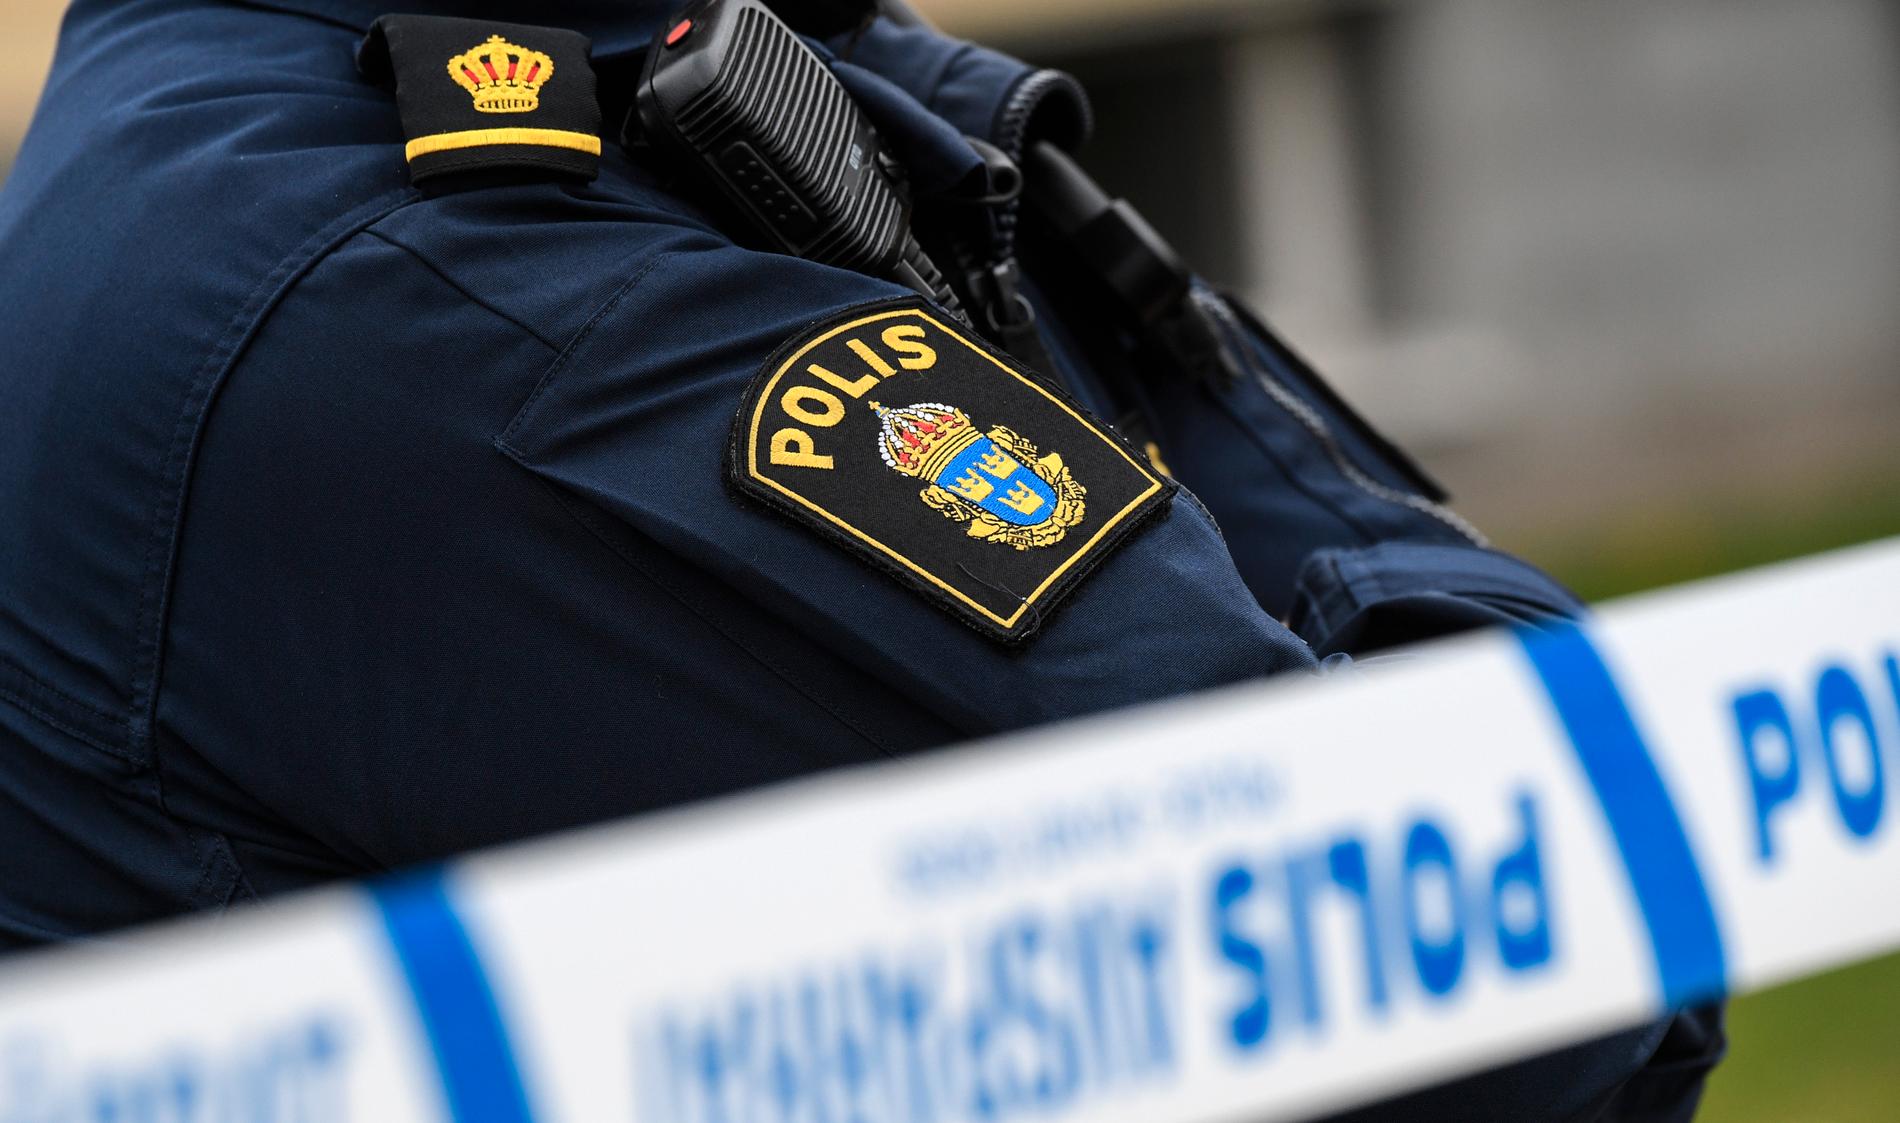 Sedan tidigare är tre män häktade misstänkta för inblandning i mordet i Norrköping i april i år. Arkivbild.